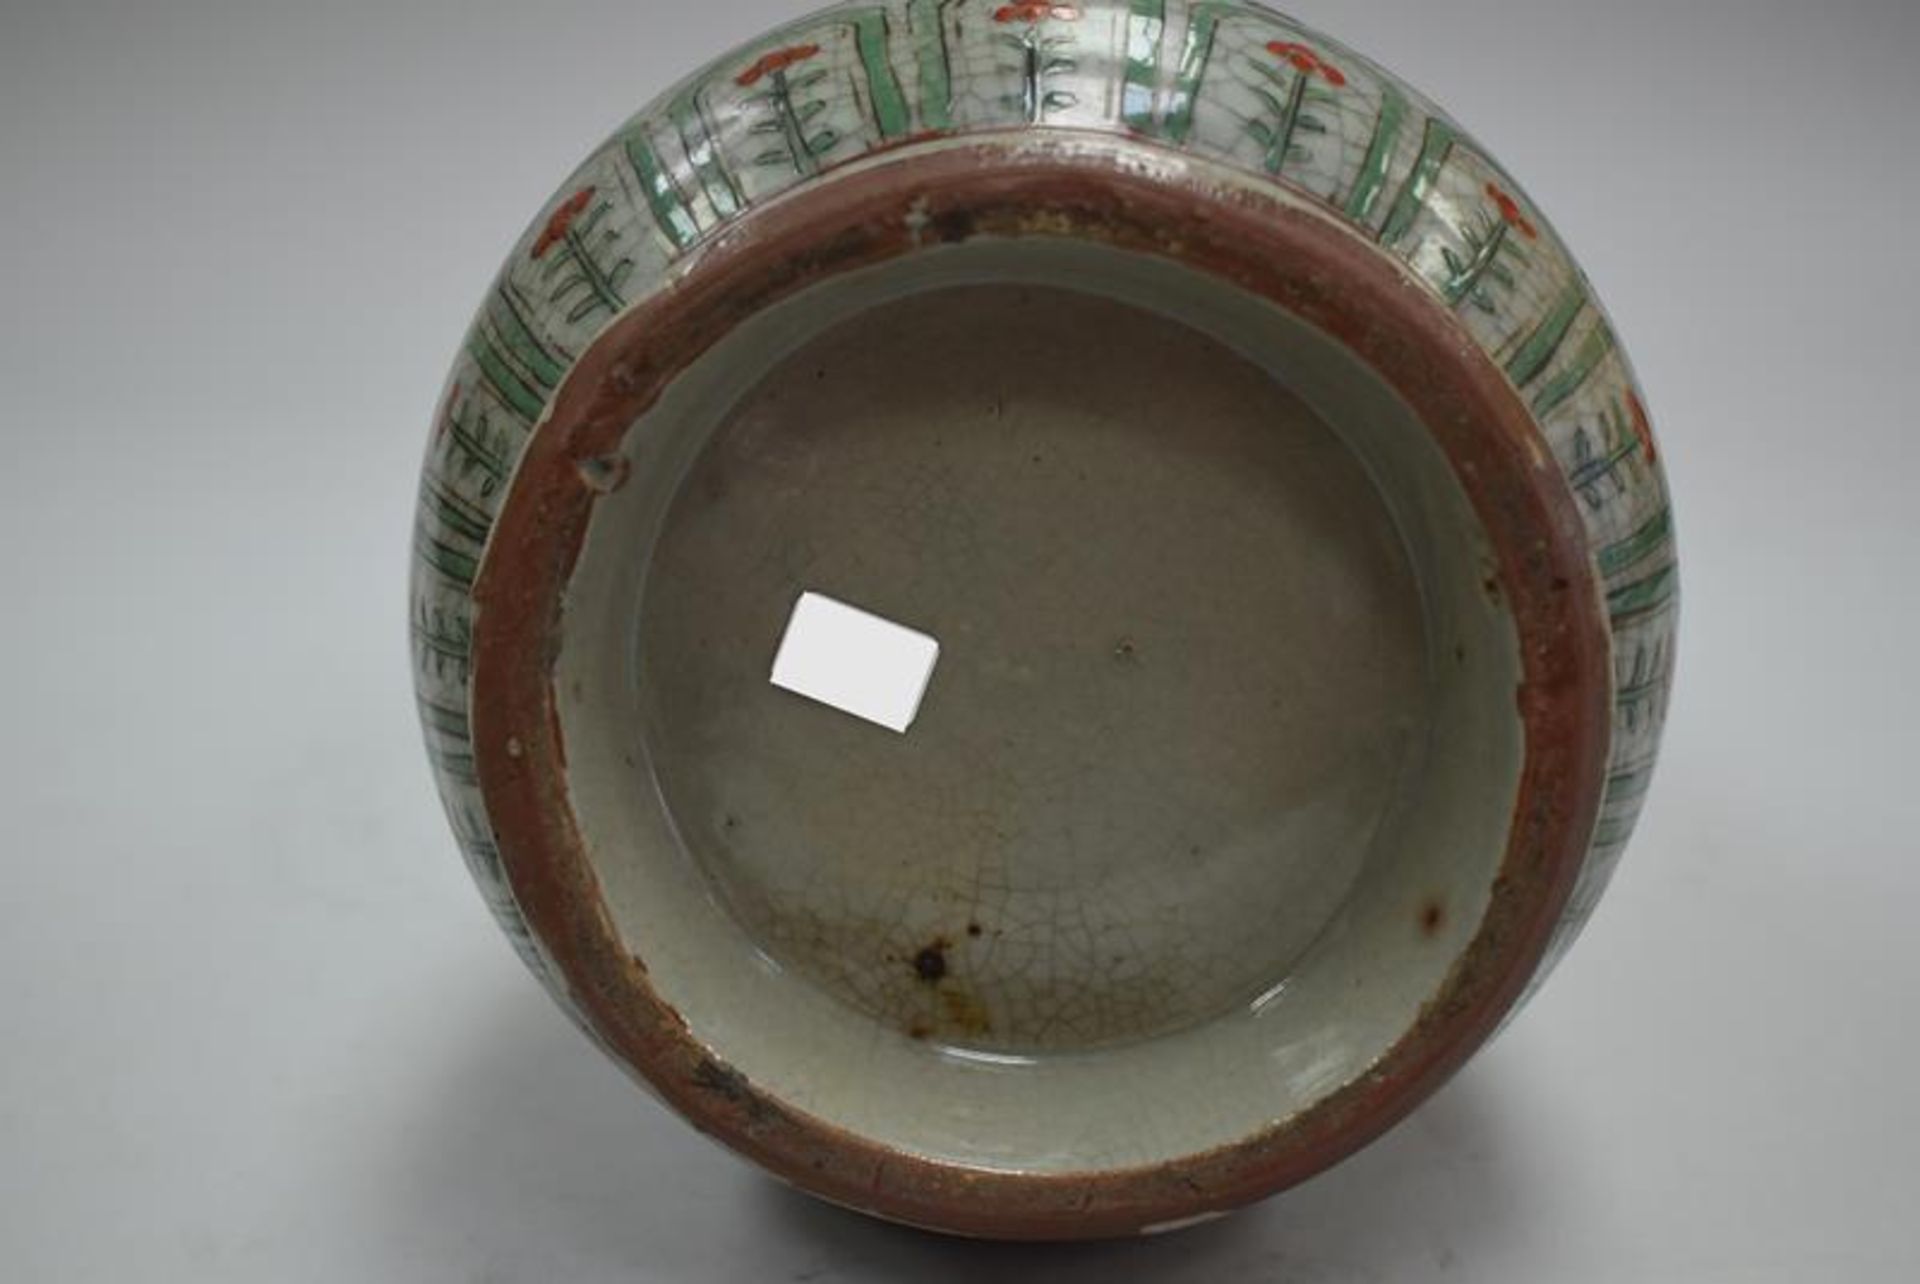 Chinesische Keramikvase um 1900Mindestpreis 160Bezeichnung Chinesische Keramikvase um 1900 - Image 2 of 2